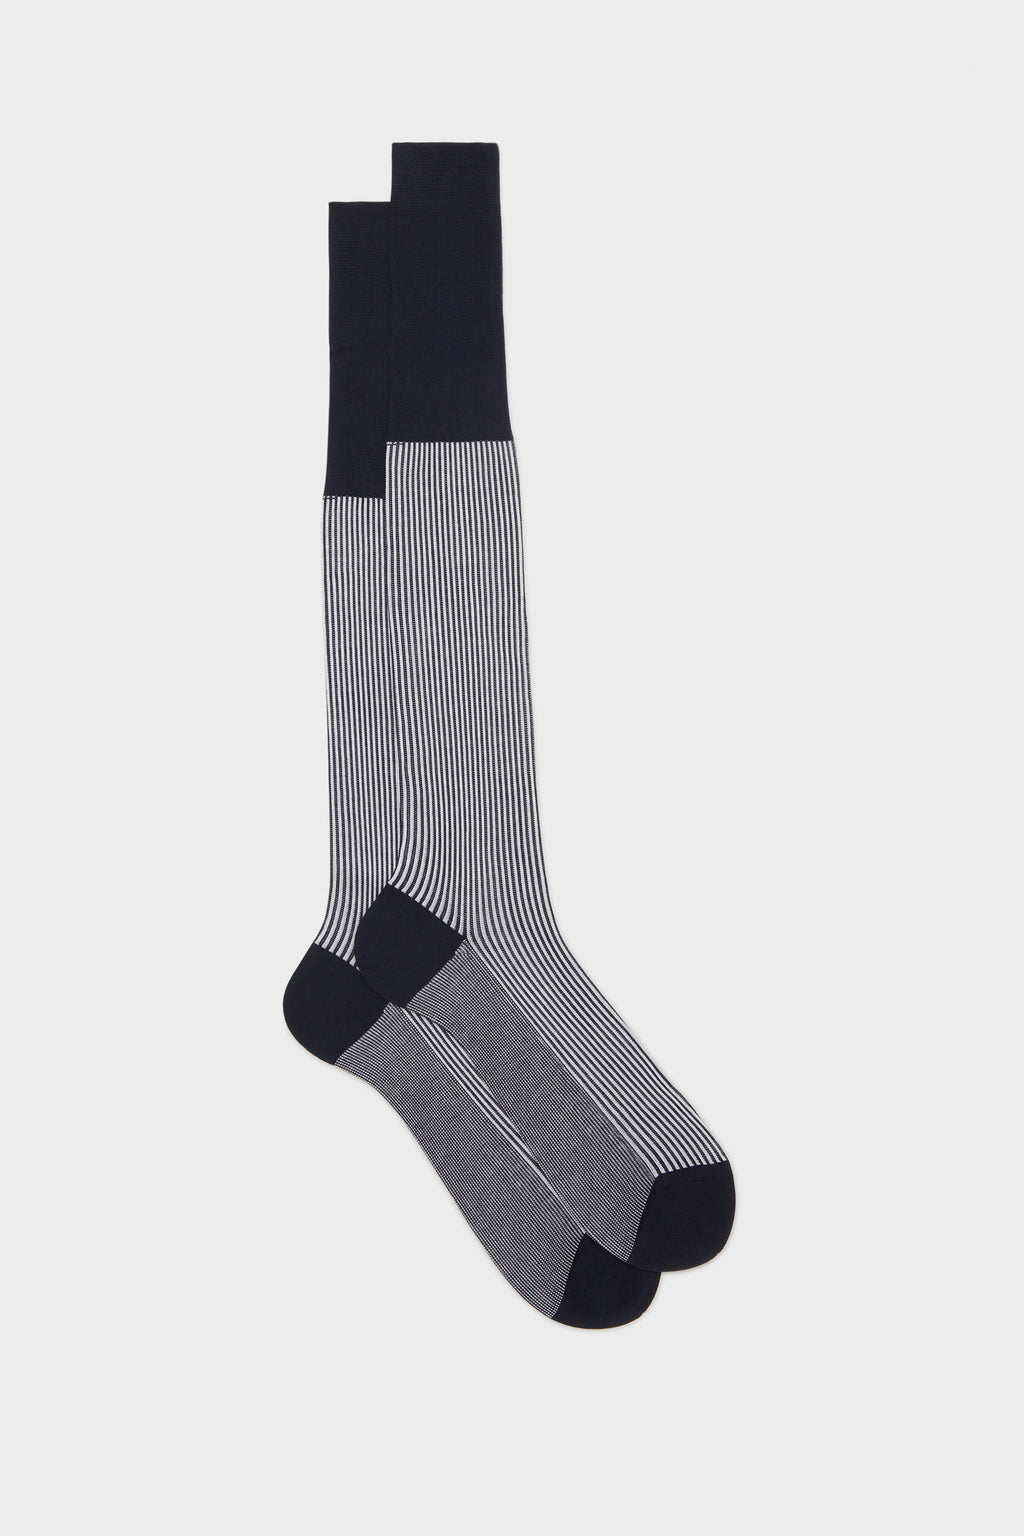 BRESCIANI - Man socks: model Enea. Pure Cotton. Blue-white – Bresciani Shop